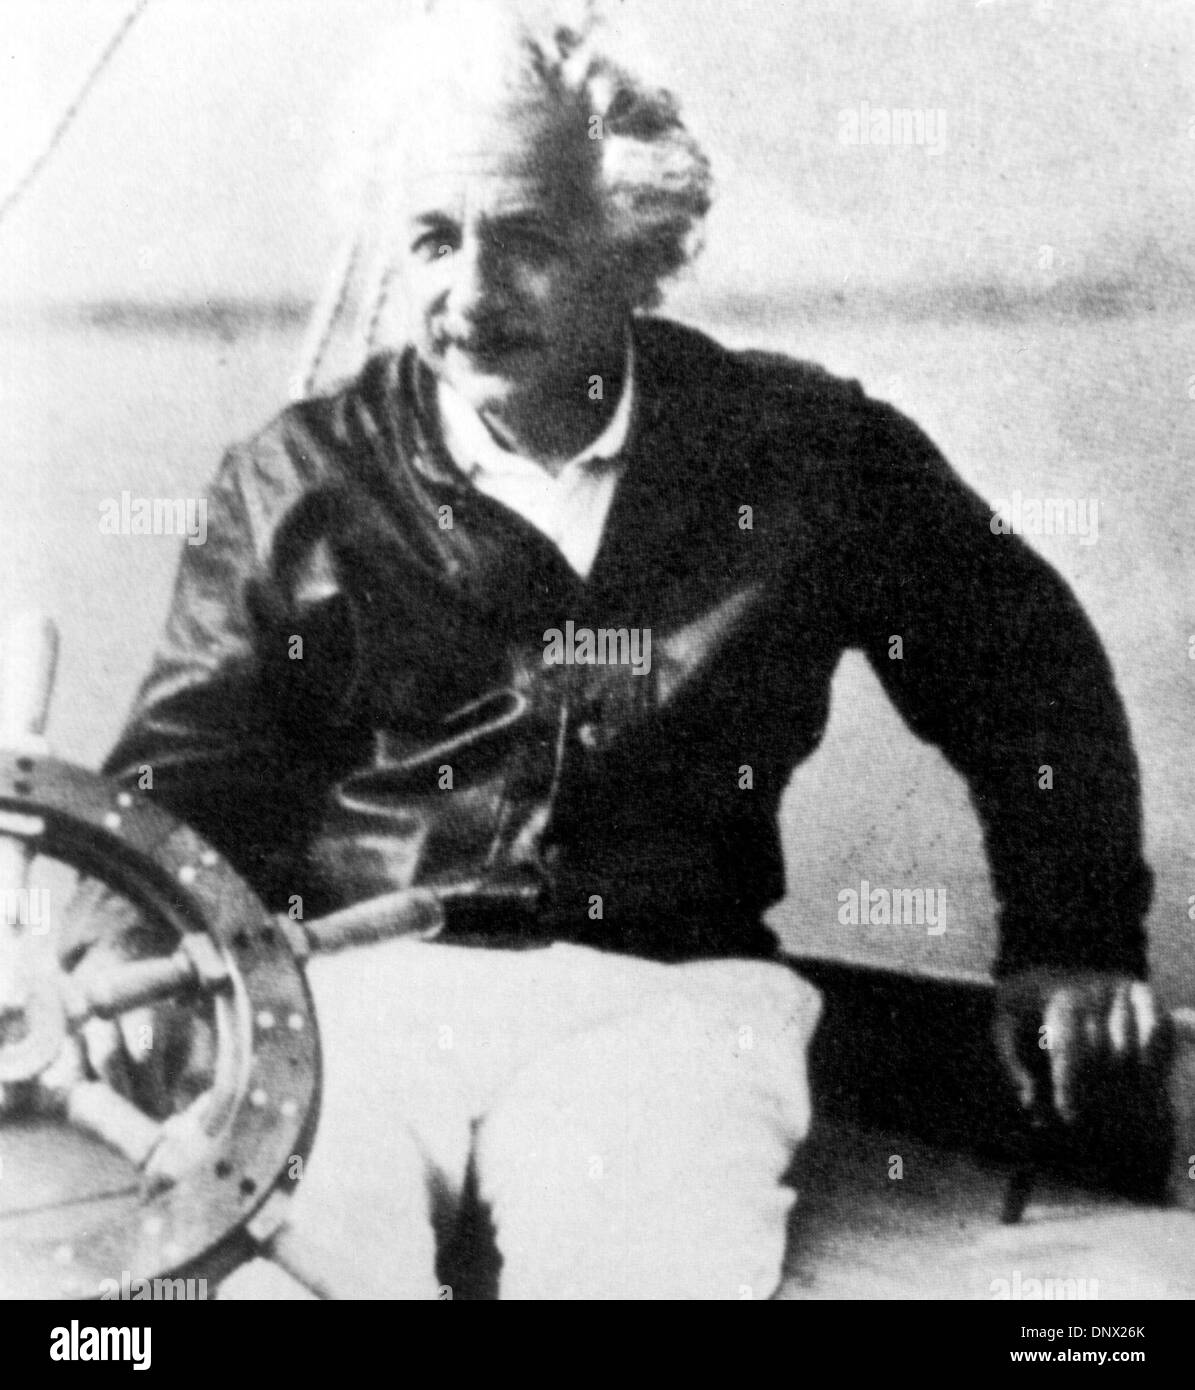 1 janvier, 1940 - Berlin, Allemagne - Juif, l'Allemand Albert Einstein physicien théorique qui est largement considéré comme le plus important du xxe siècle scientifique et l'un des plus grands physiciens de tous les temps, a produit une grande partie de son travail remarquable pendant son séjour à l'Office des brevets et dans ses temps libres. Il a joué un rôle de premier plan dans la formulation des théories générales et spéciales o Banque D'Images